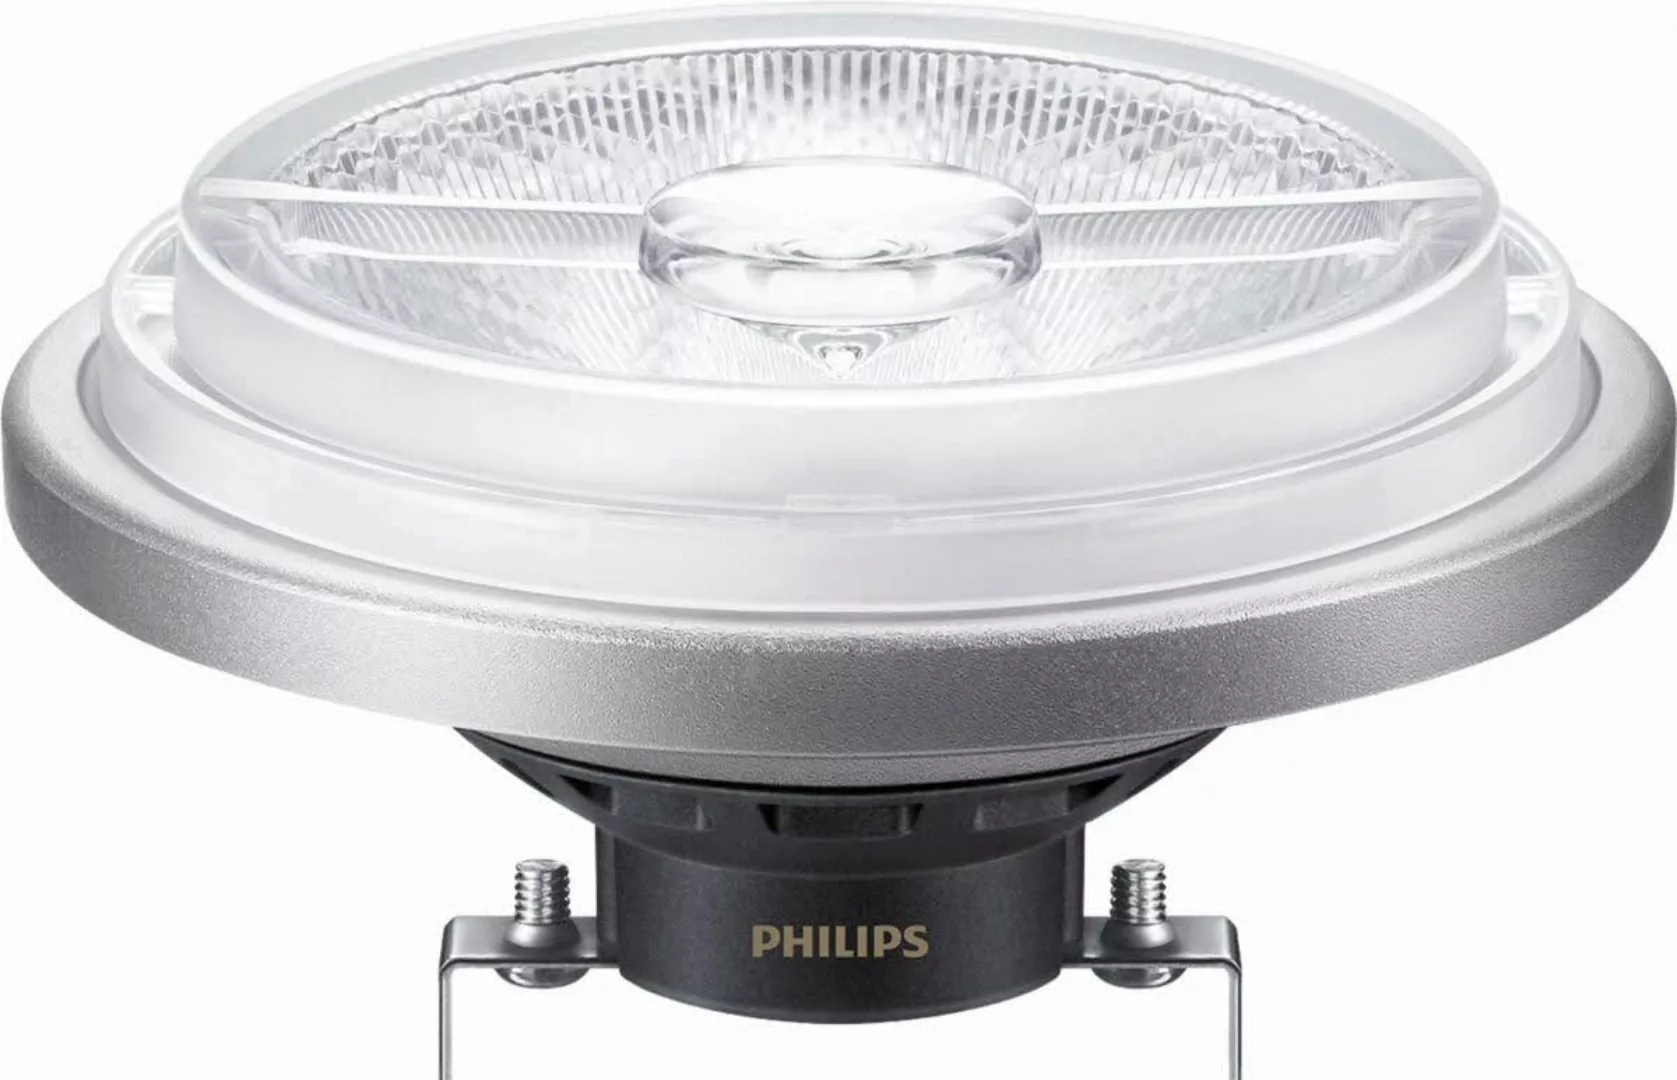 Philips Lighting LED-Reflektorlampe AR111 G53 927 DIM MAS Expert #33381900 günstig online kaufen